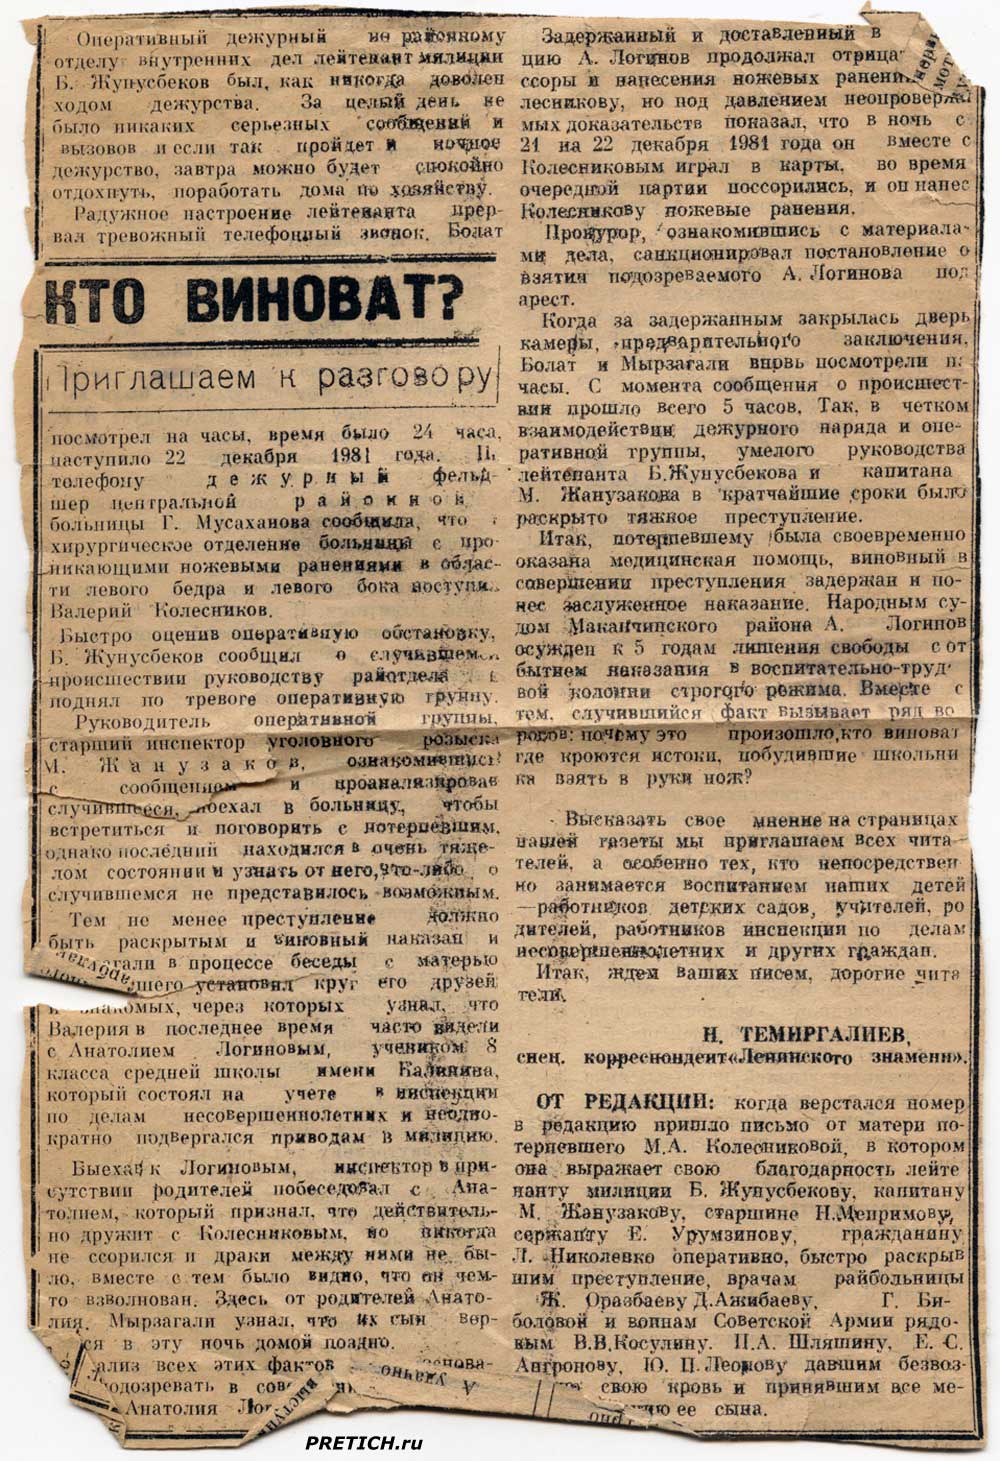 Кто виноват? Анатолий Логинов и Валерий Колесников, Маканчи, 1981 год